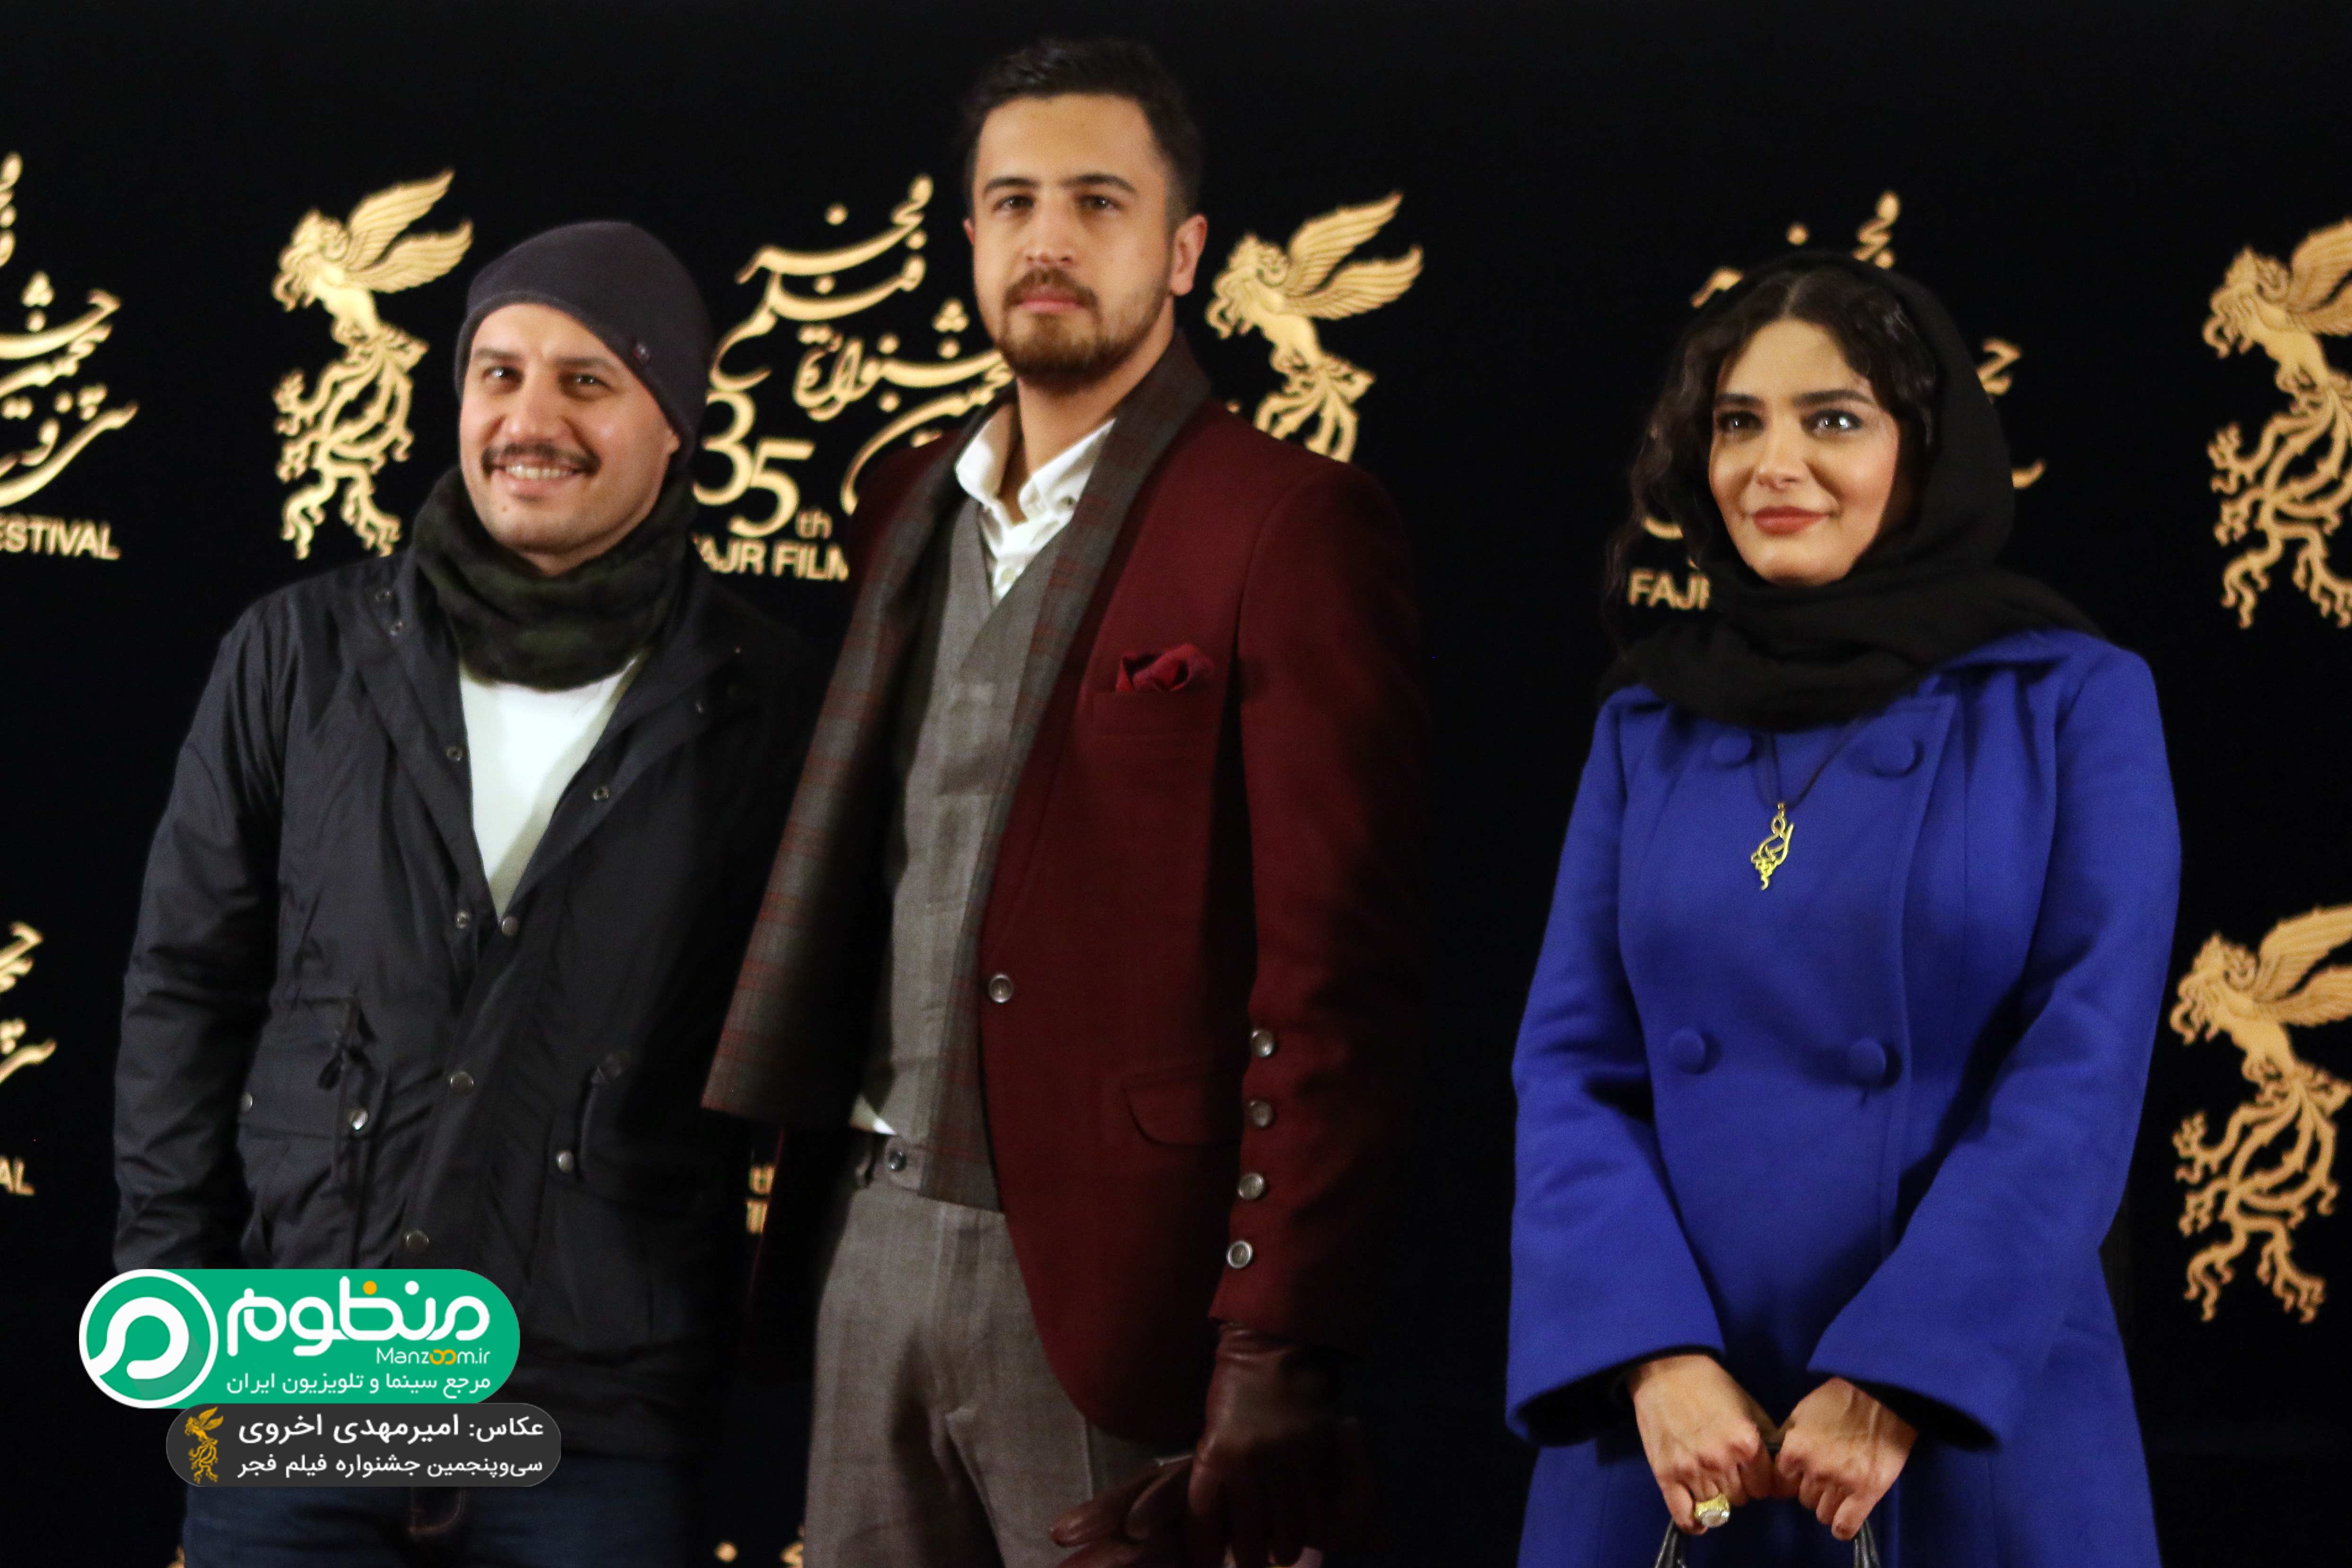 جواد عزتی در فرش قرمز فیلم سینمایی ماجرای نیمروز به همراه مهرداد صدیقیان و لیندا کیانی